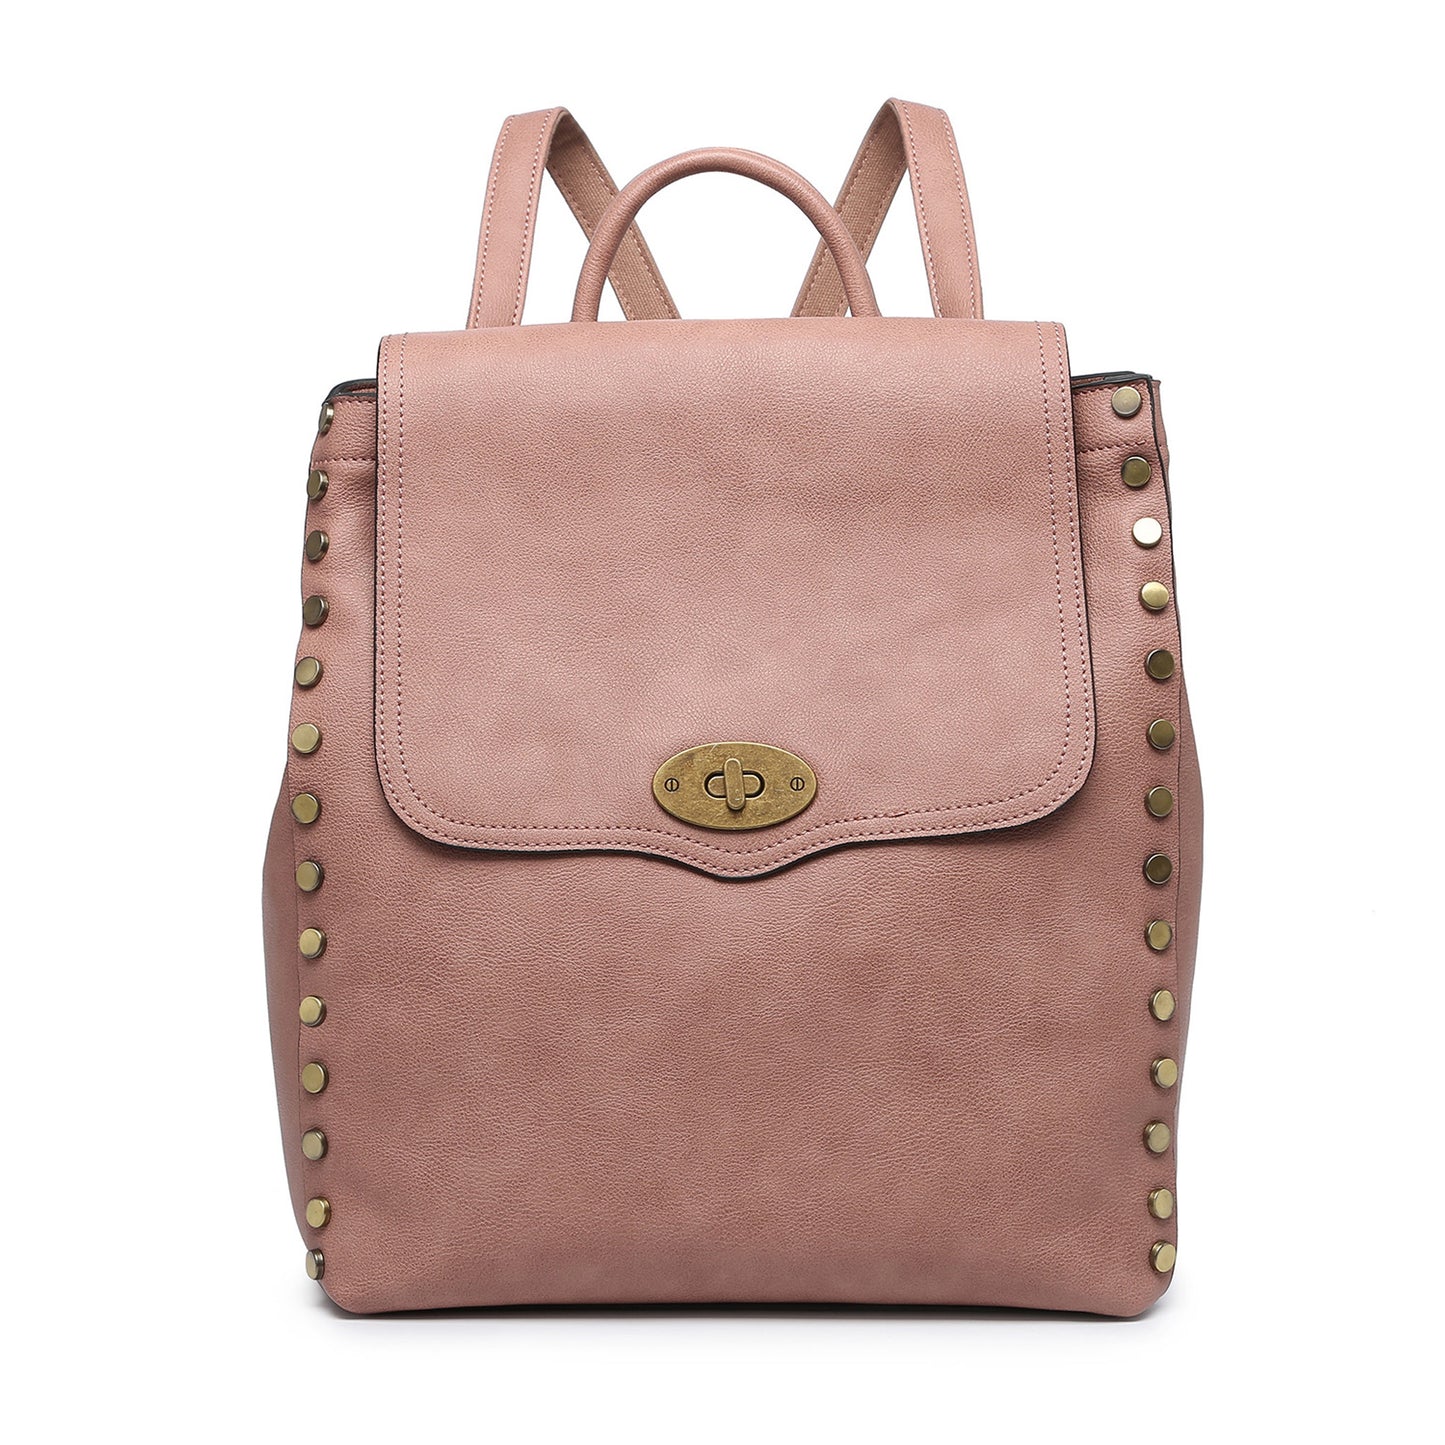 Best Women's Backpack Bag | Vegan Leather Backpack Bag